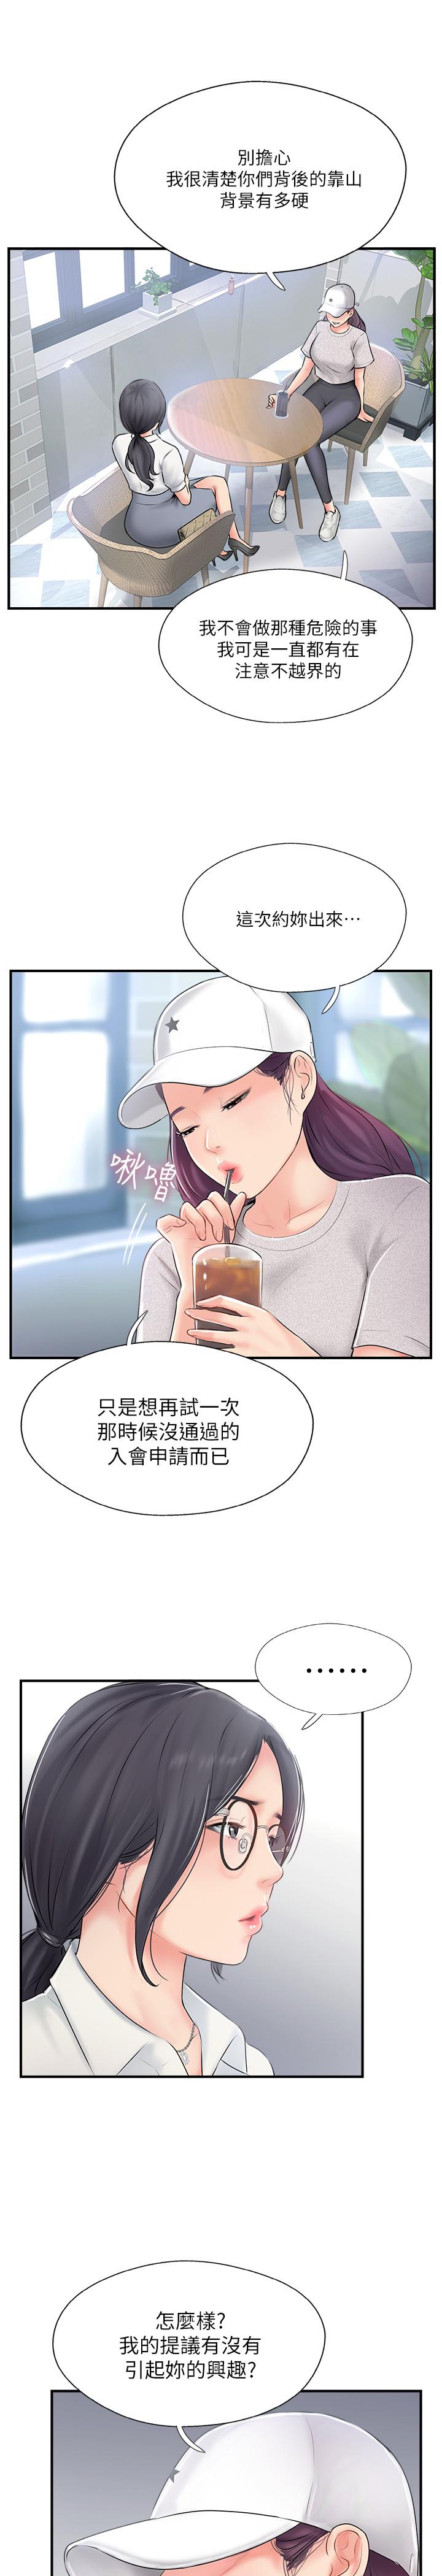 韩国污漫画 完美新伴侶 第18话-新情侣登场 9